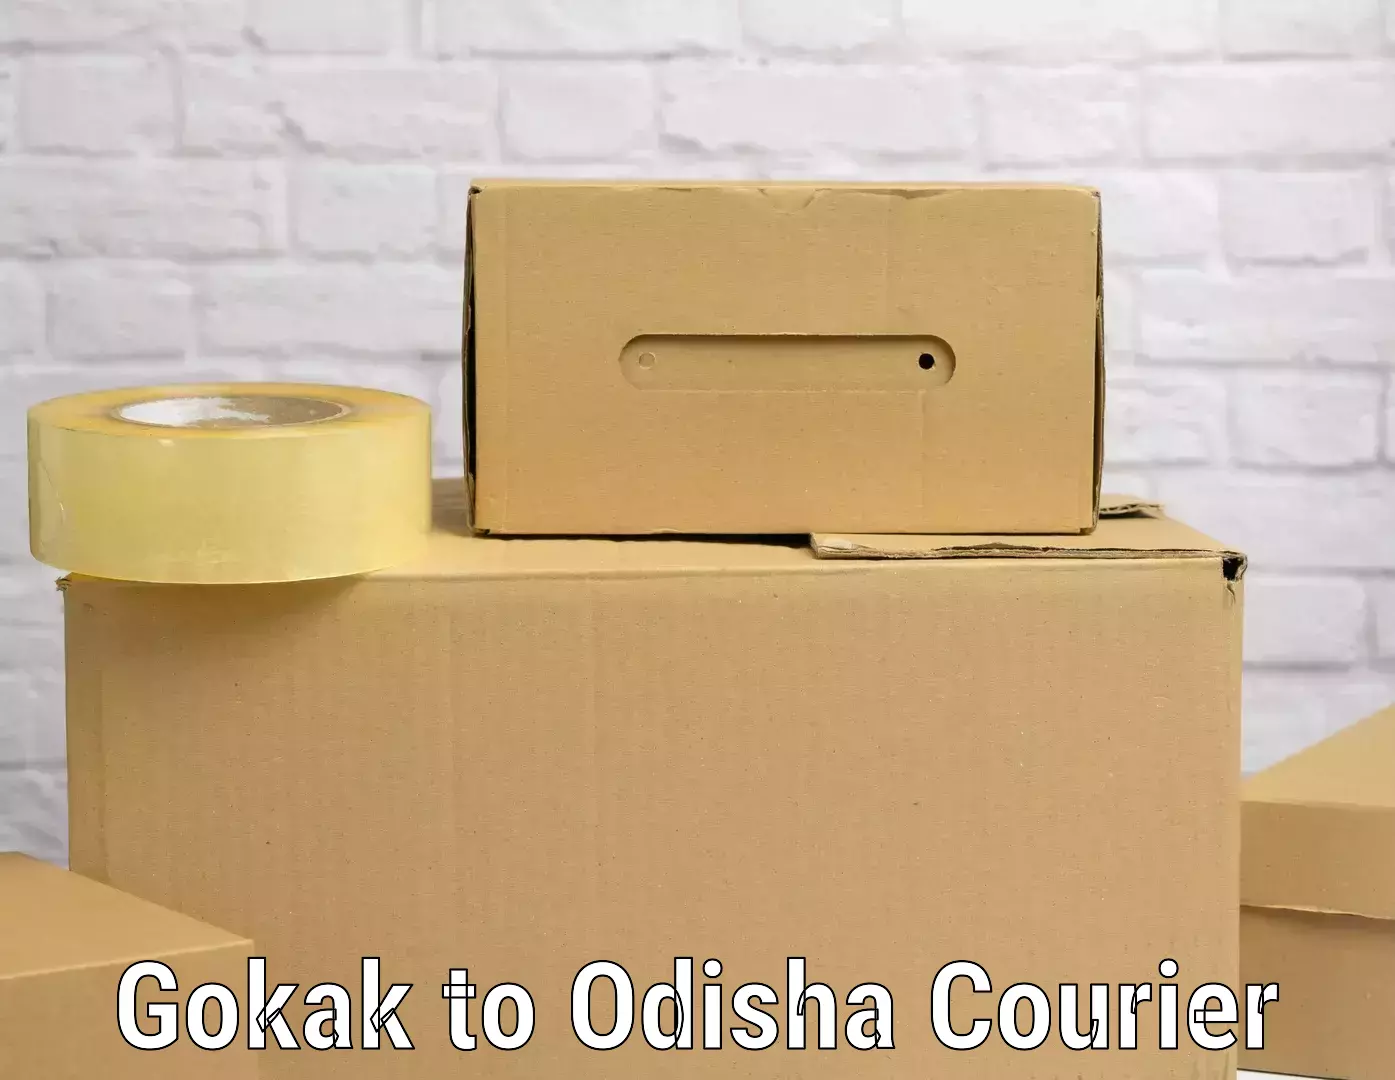 Same day luggage service Gokak to Odisha